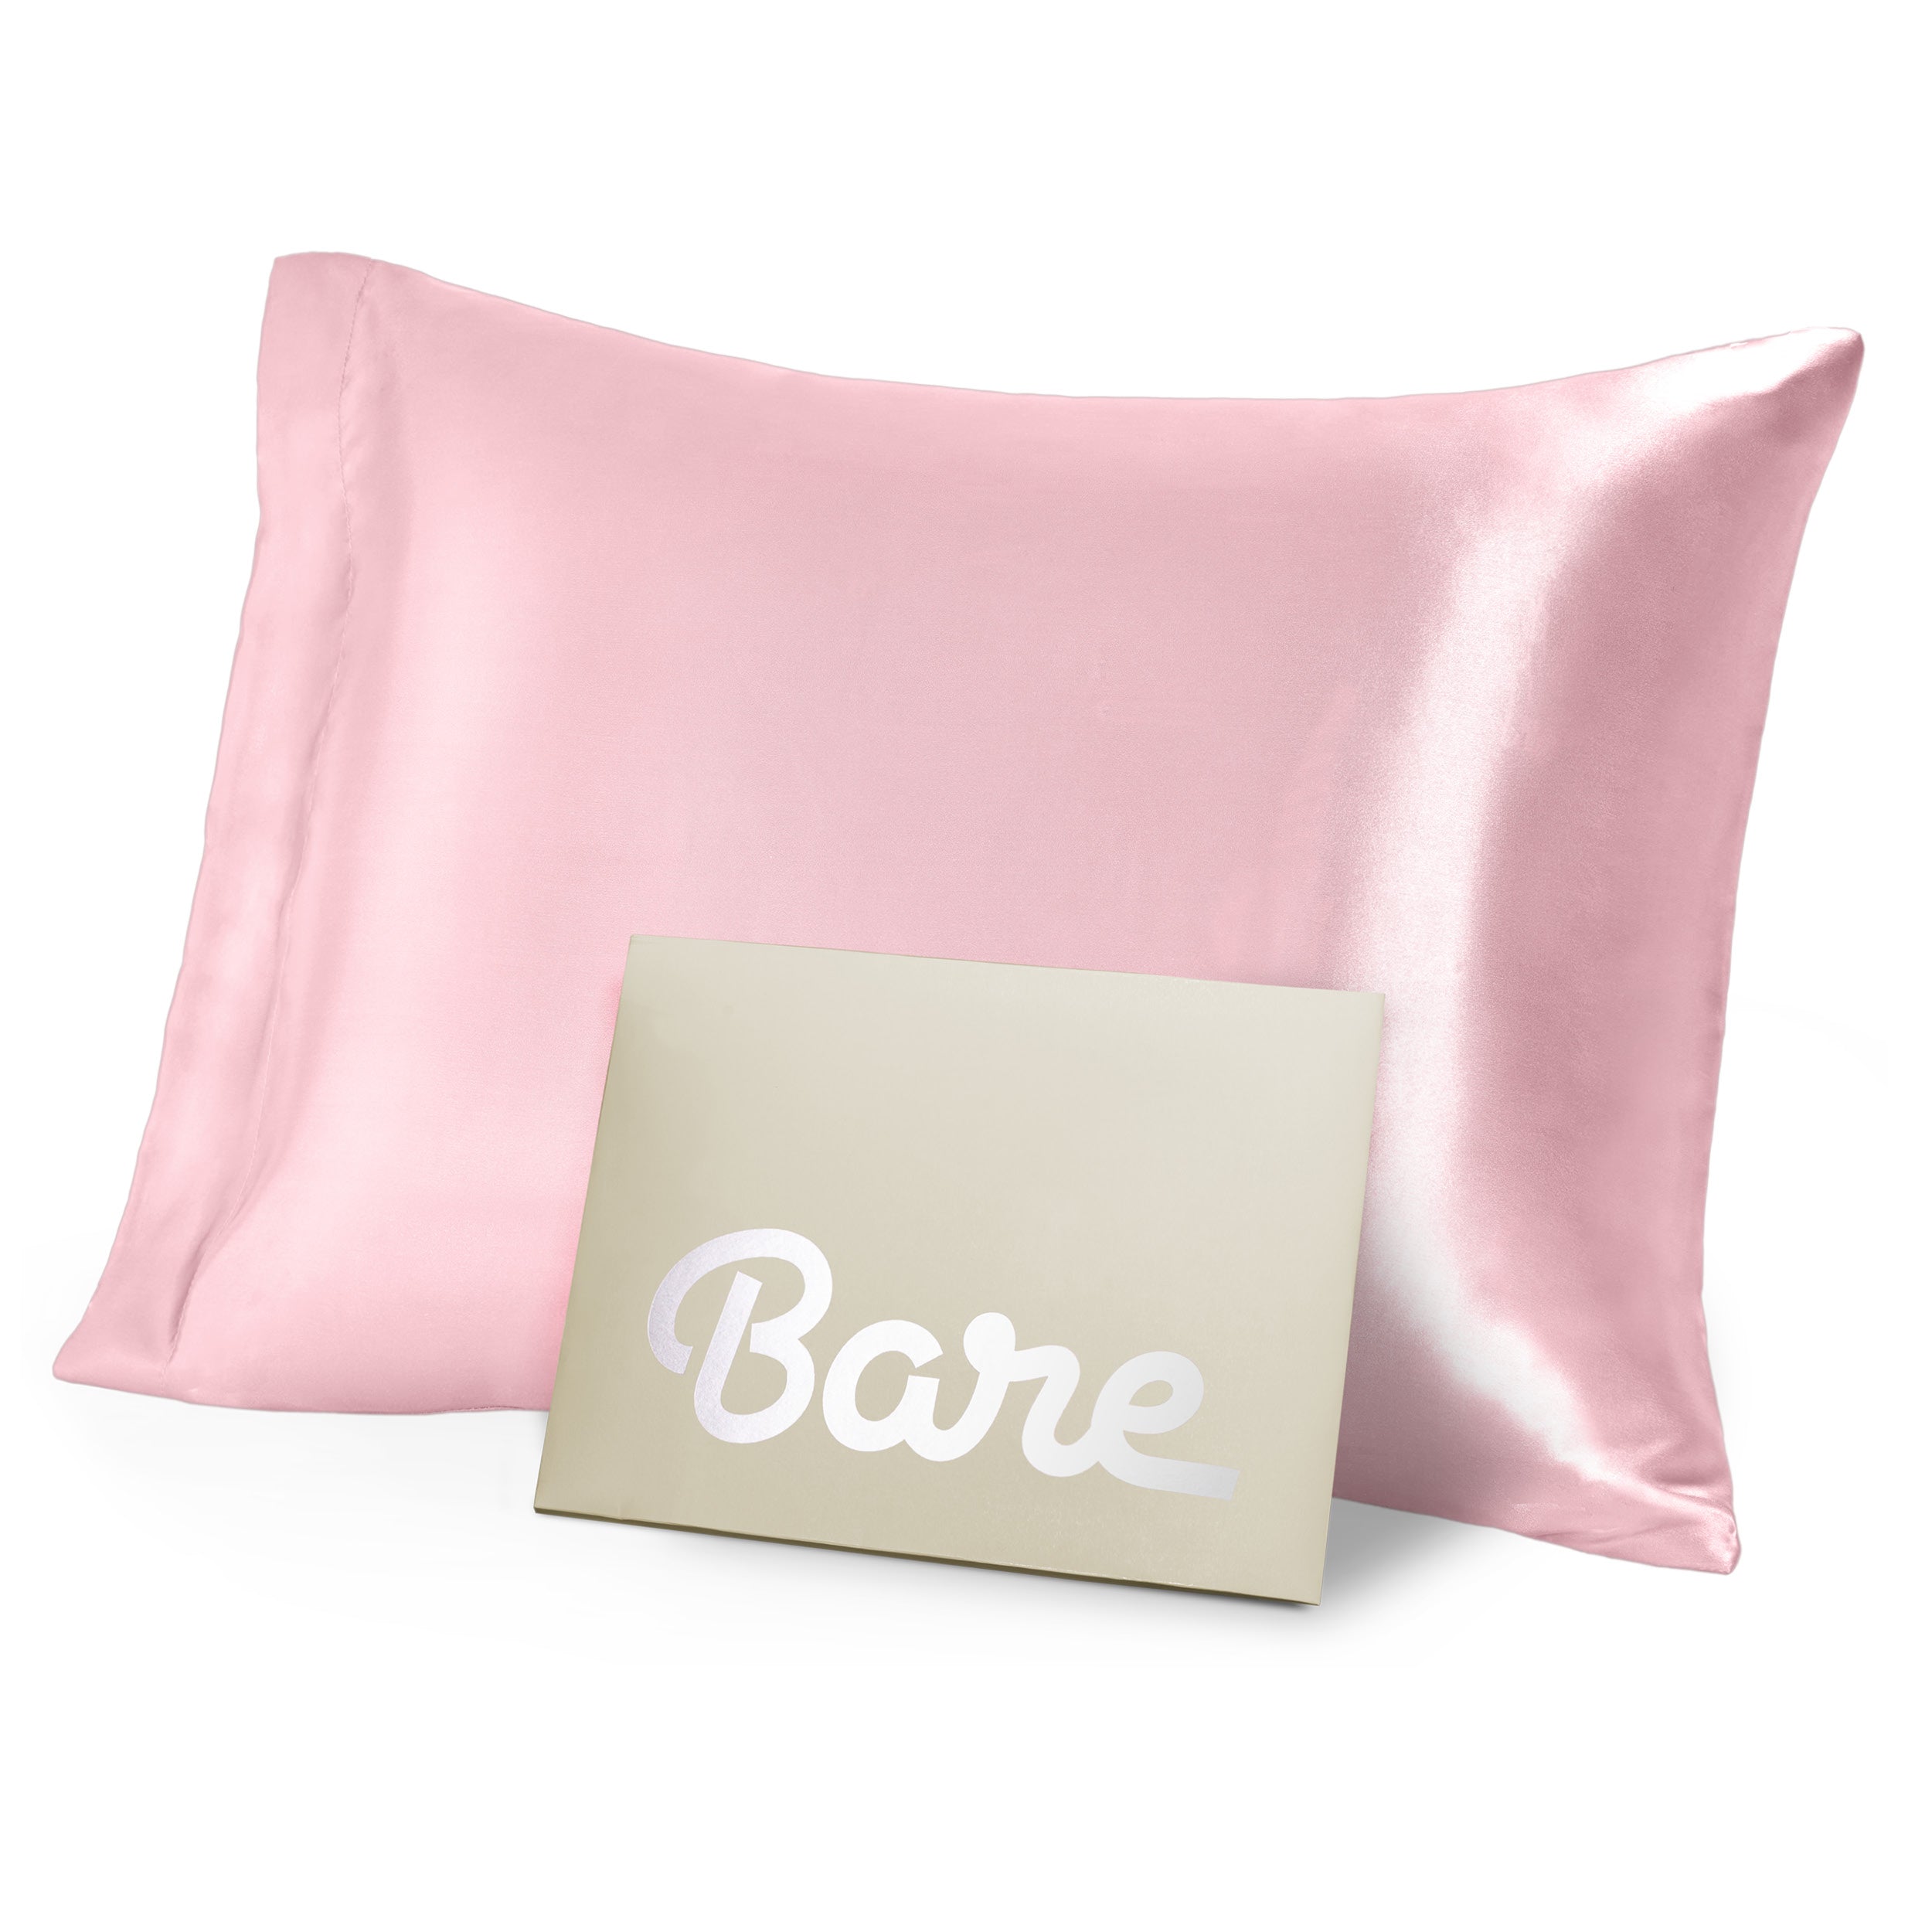 A pink mulberry silk pillowcase on a pillow